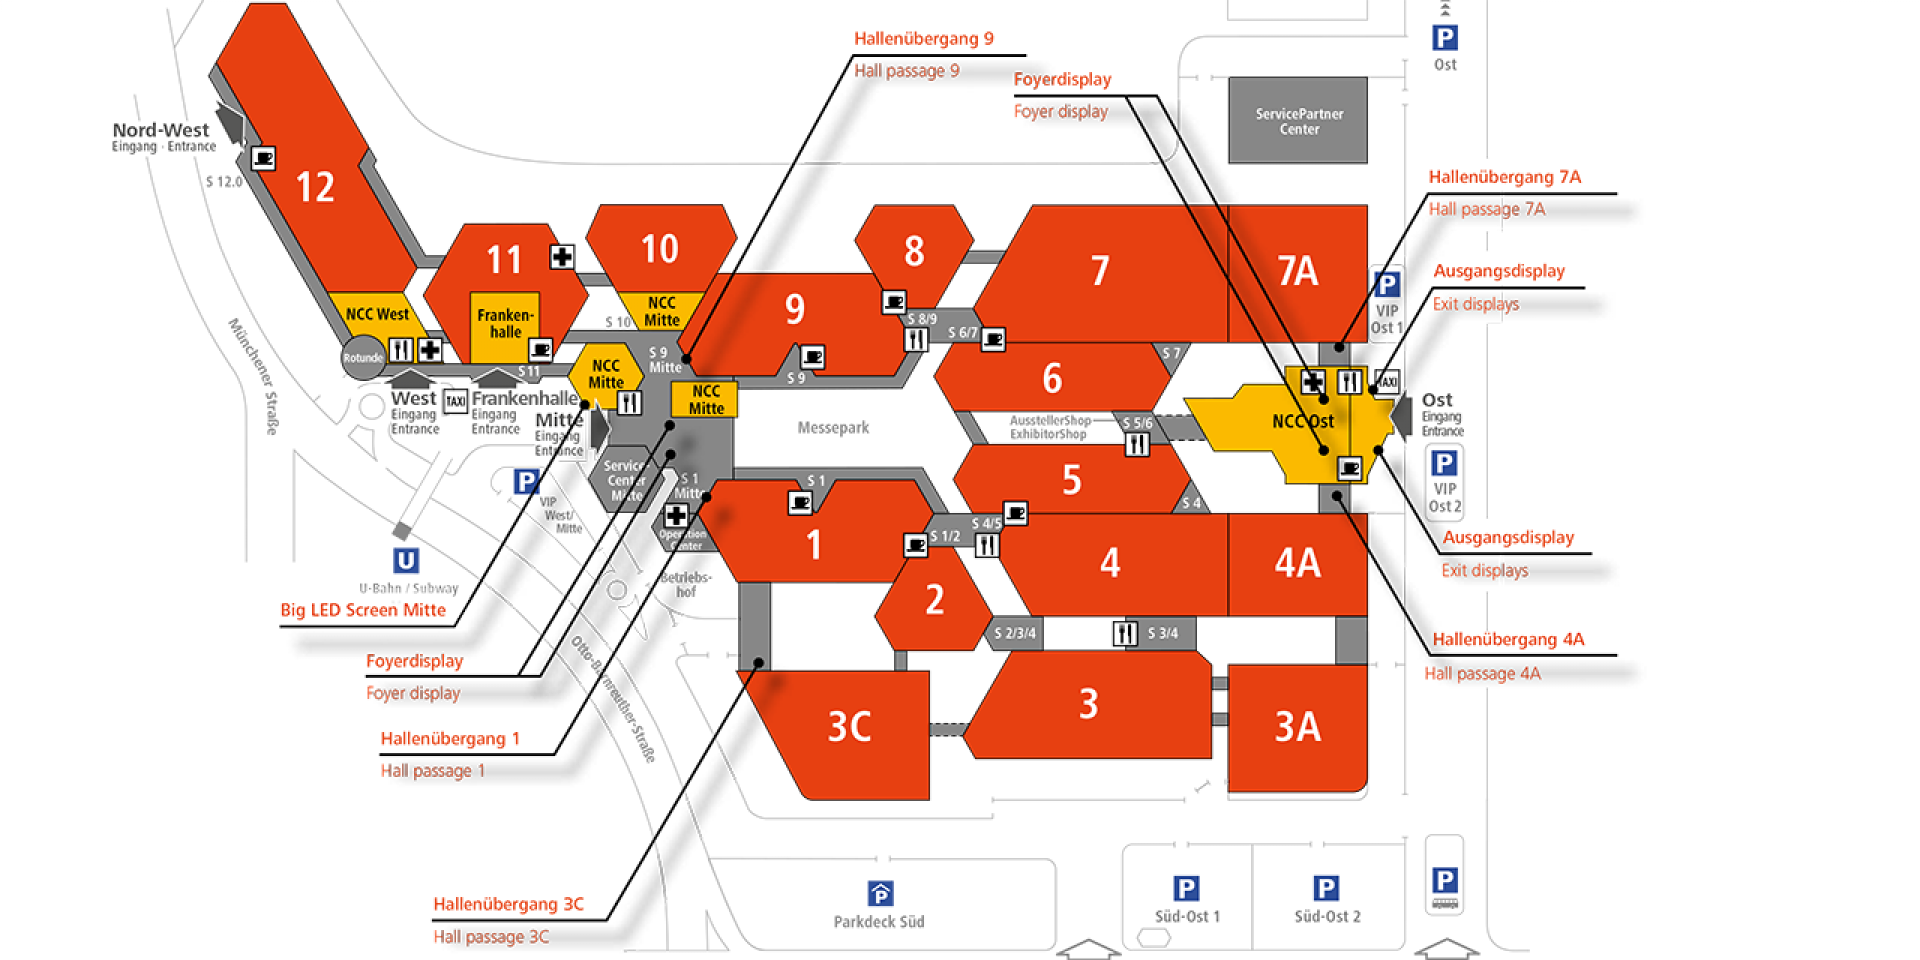 Karte mit den Standorten der Digital Signage Displays der NürnbergMesse